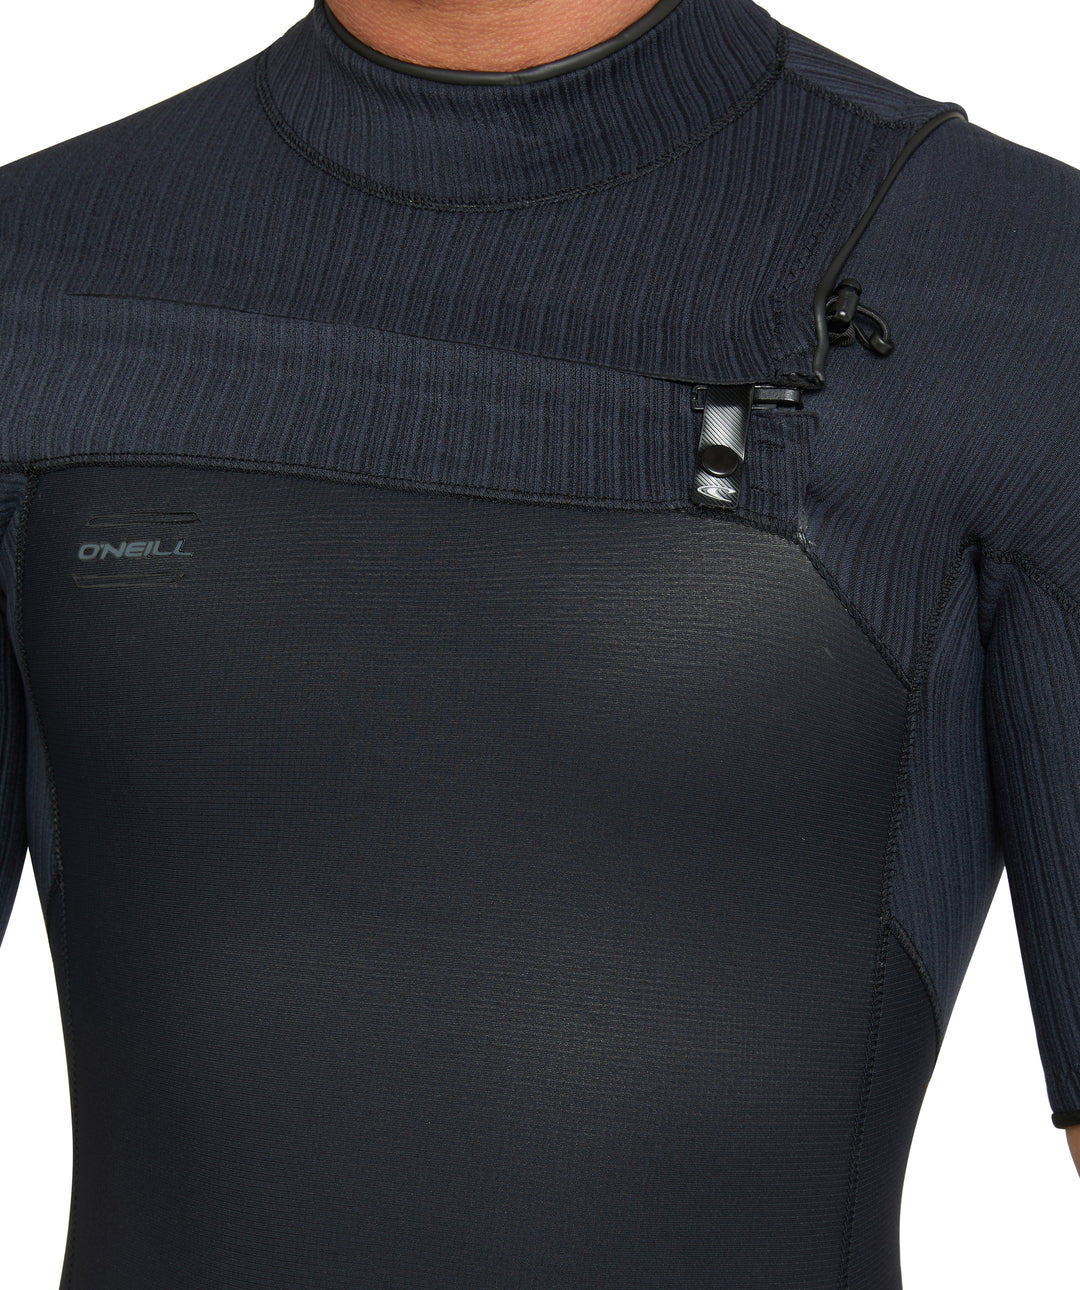 Hyperfreak 2mm Chest Zip Springsuit Wetsuit - Black